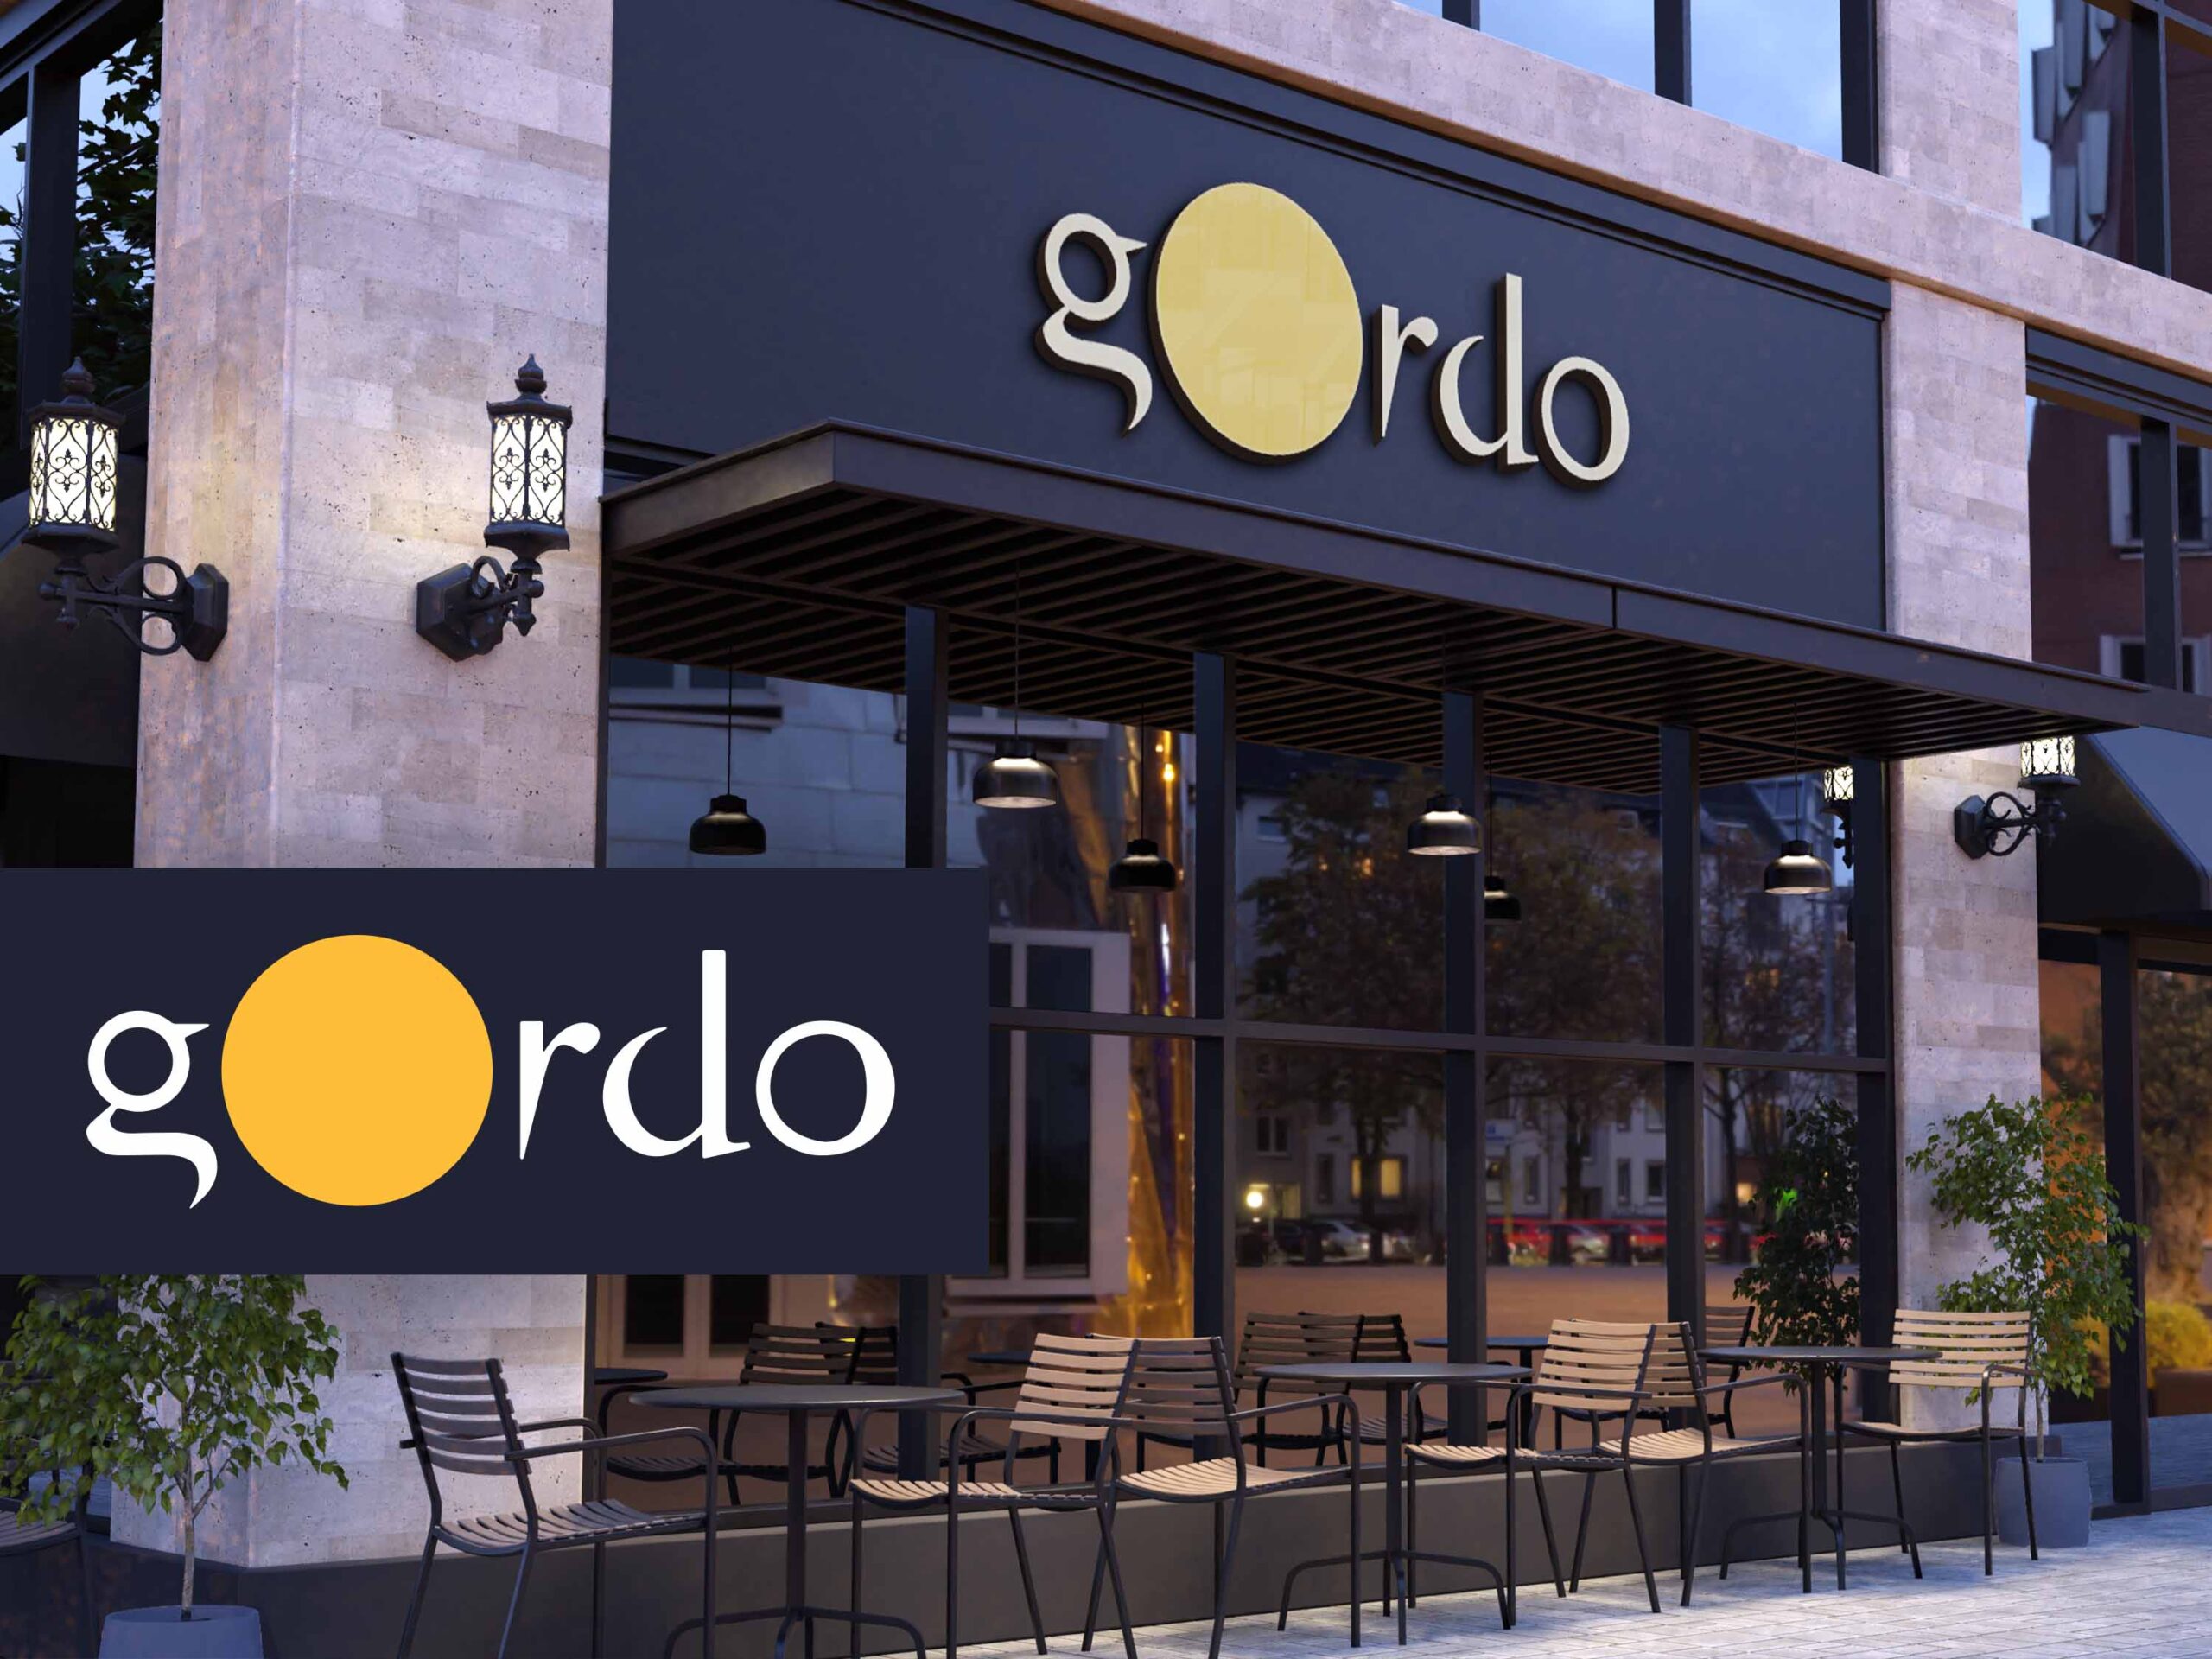 gOrdo Restaurant Signage